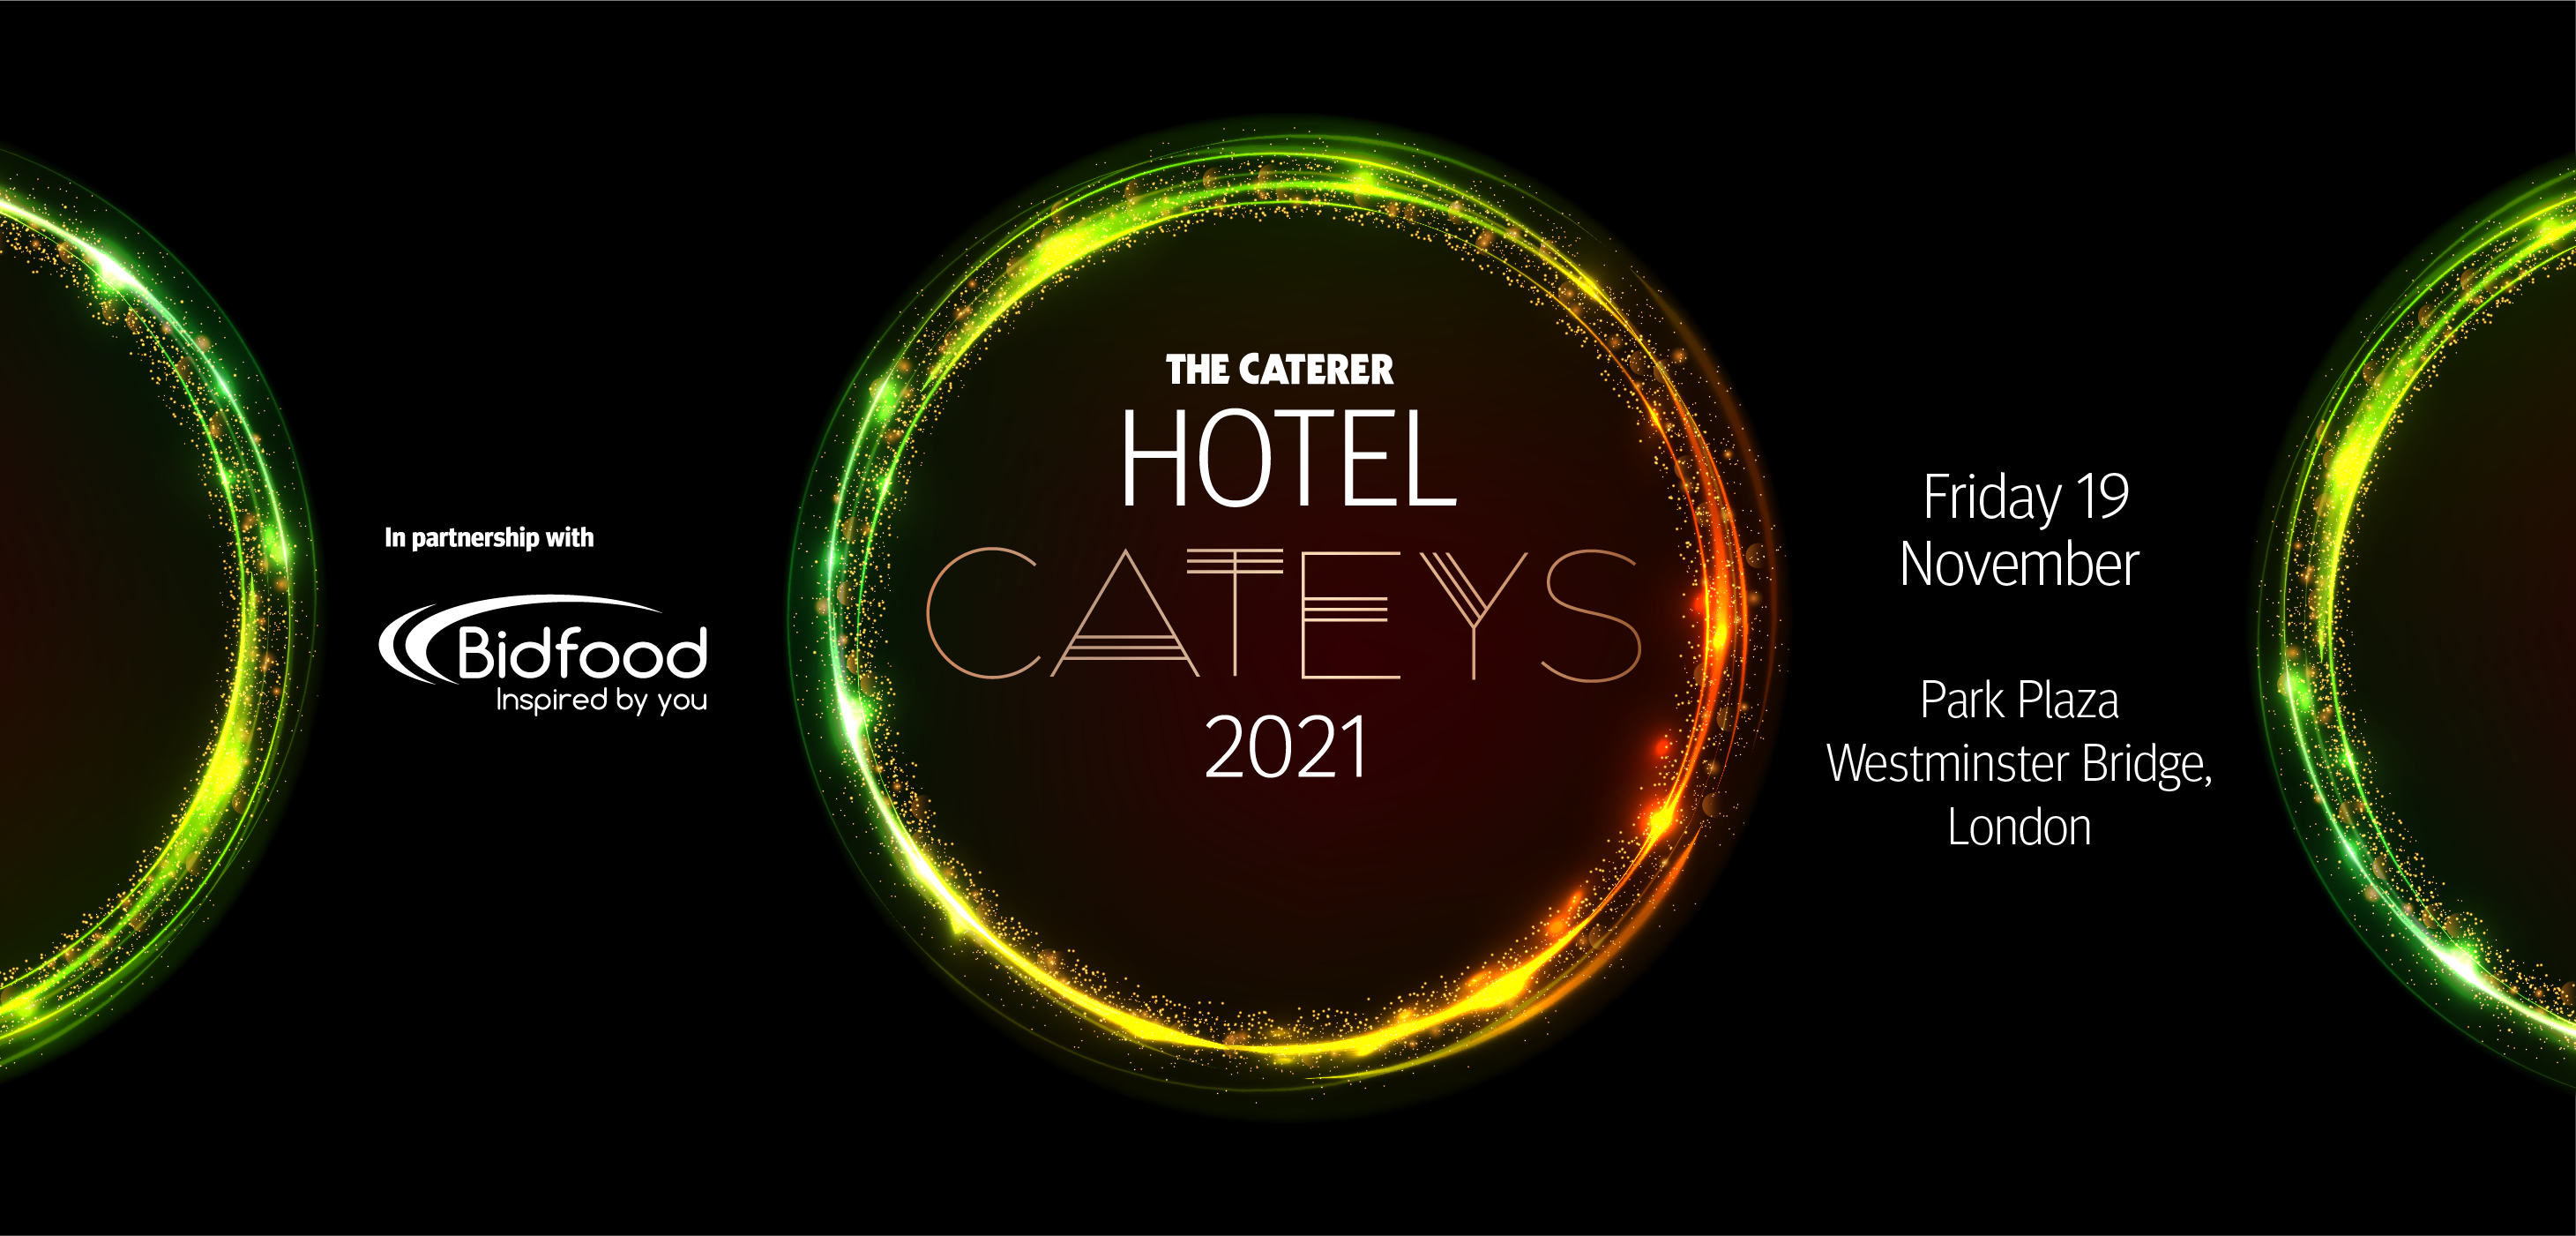 Hotel Cateys 2021 winners revealed